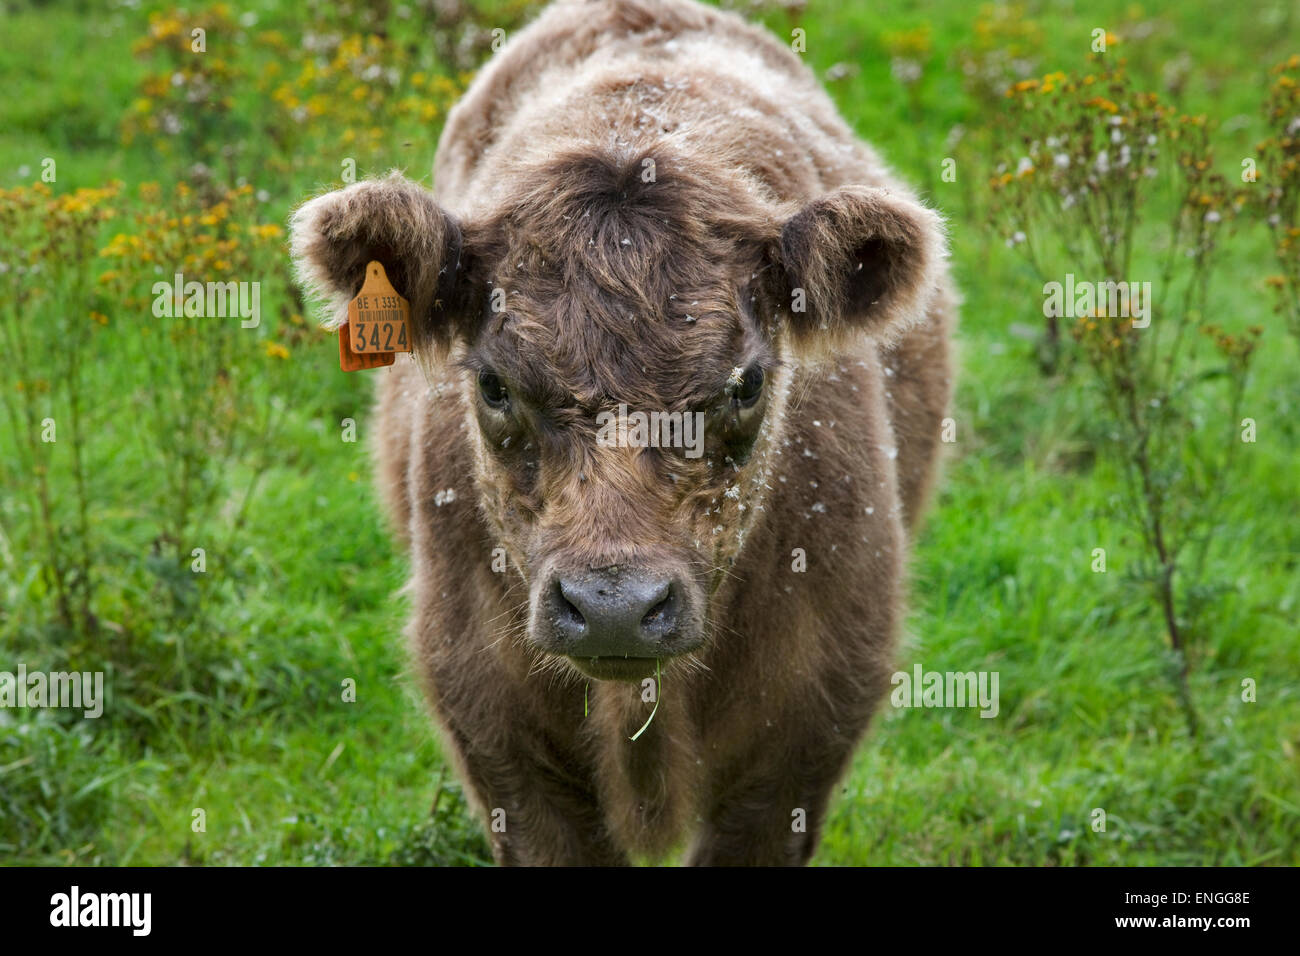 Bovins Galloway Galloway (Bos taurus) vache au pré avec des graines de fleurs couvert de fourrure Banque D'Images